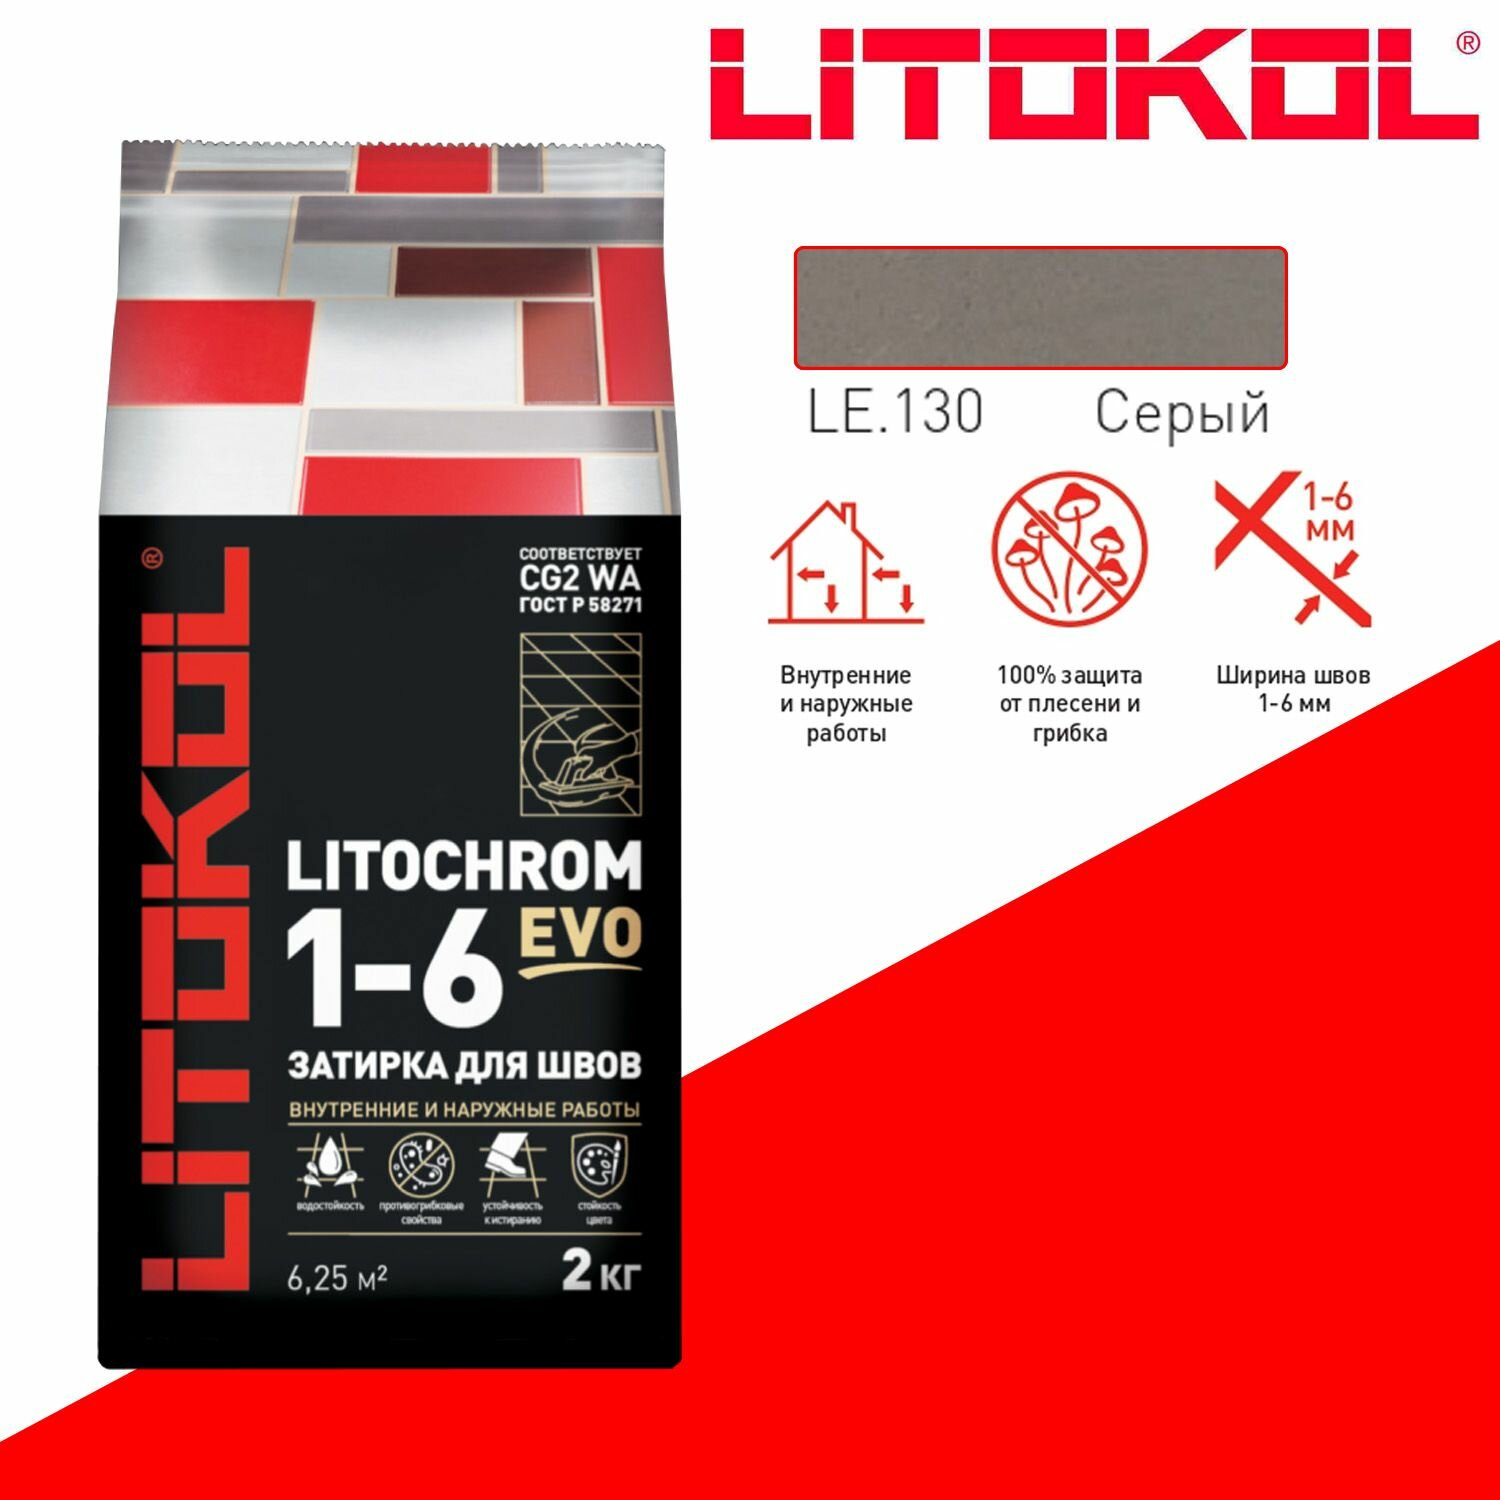 Затирка цементная Litokol Litochrom Evo 1-6 мм LE.130 серый 2 кг